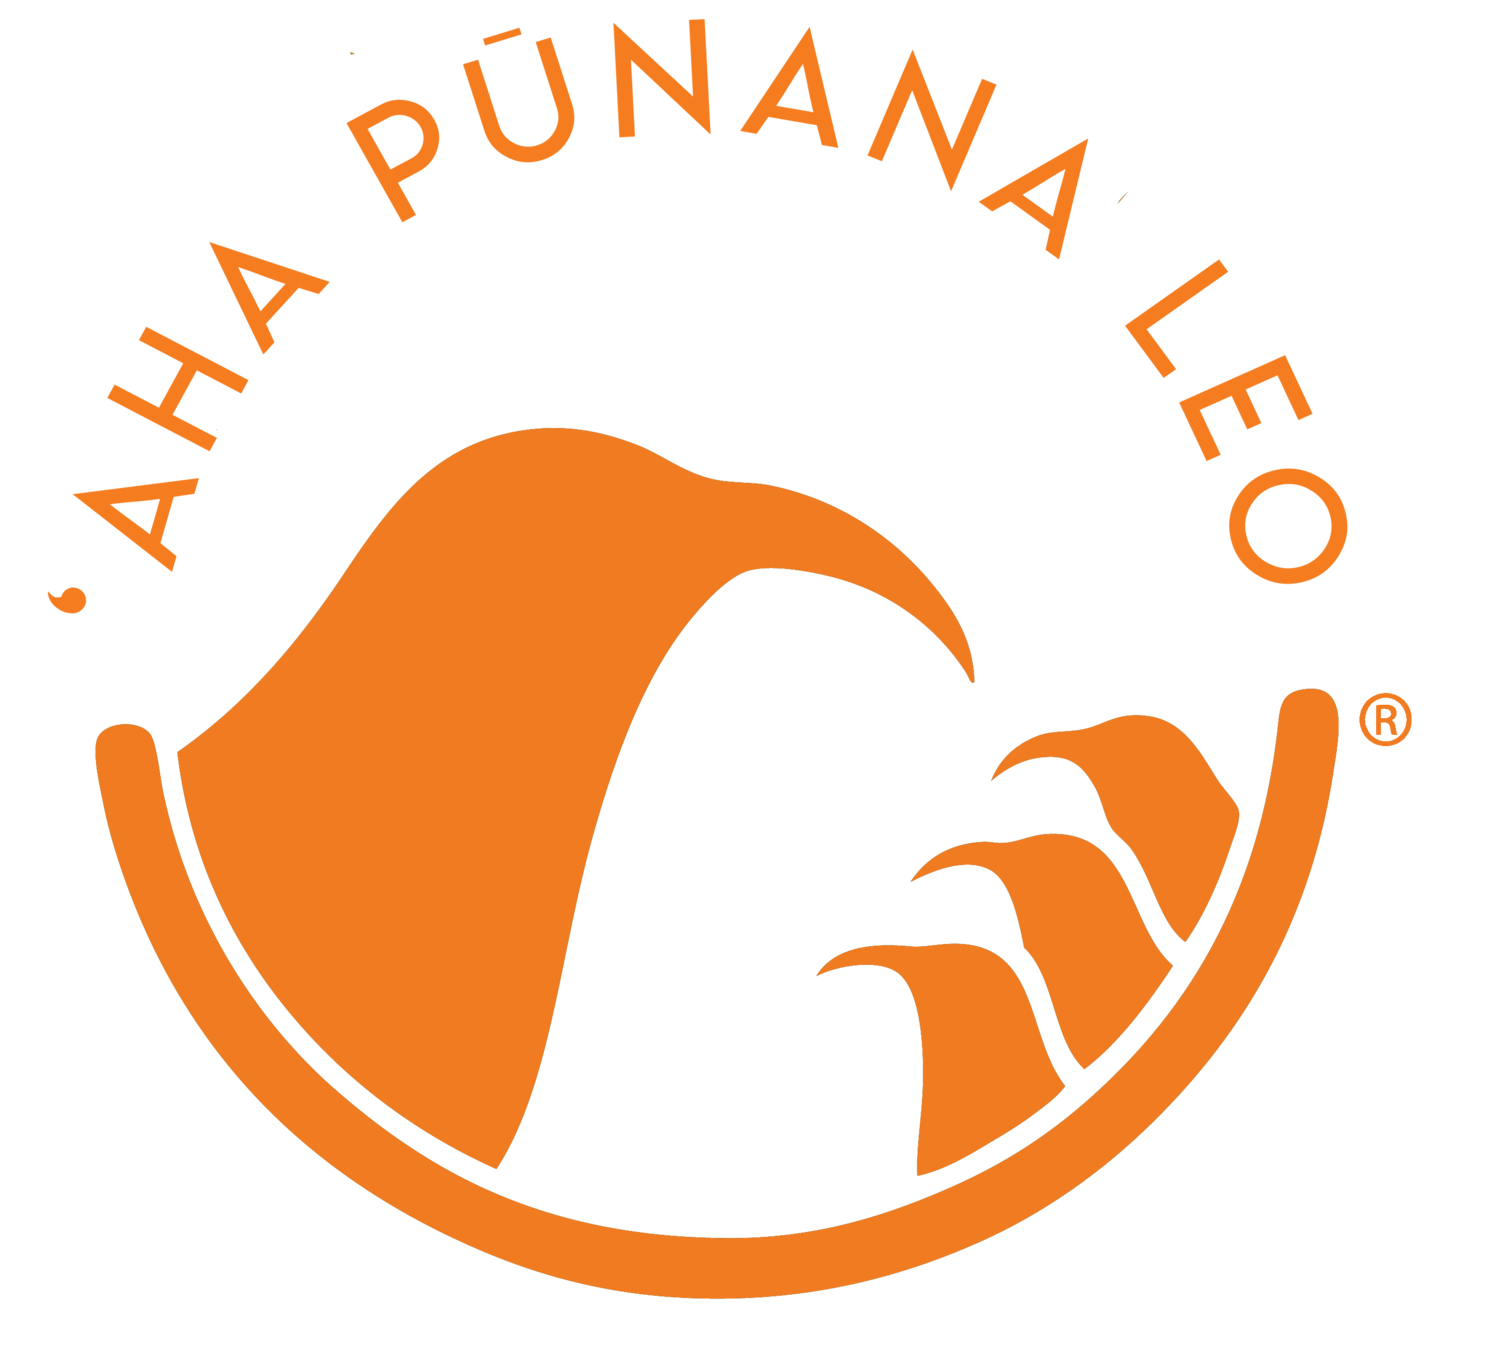 ʻAha Pūnana Leo